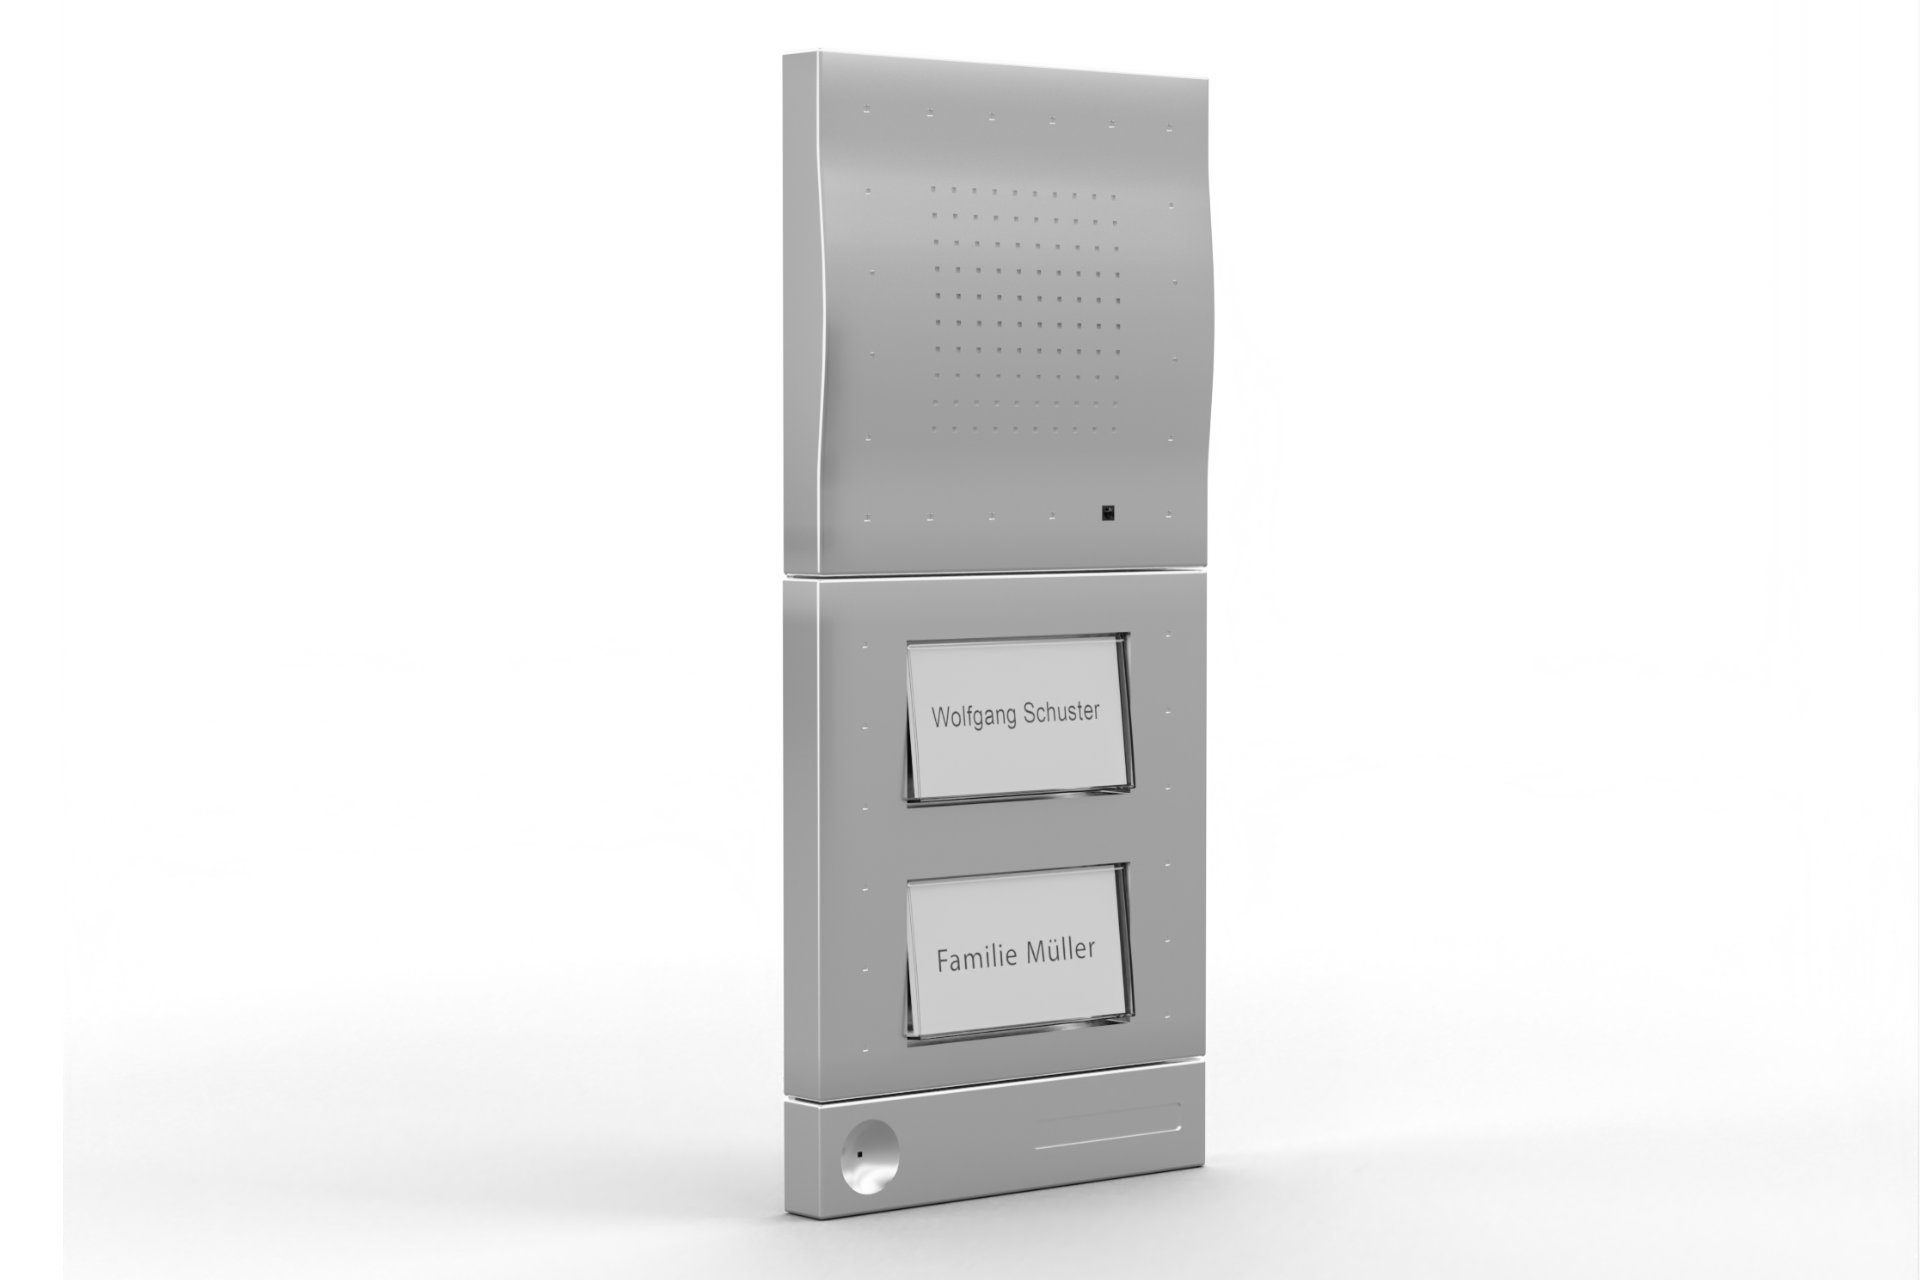 DoorLine Classic Smart Home Türklingel (direkt auf´s Telefon, Set mit 1 und 2 Klingeltaster-Modul, Gegensprechanlage mit dem DECT-Telefon oder dem Smartphone)